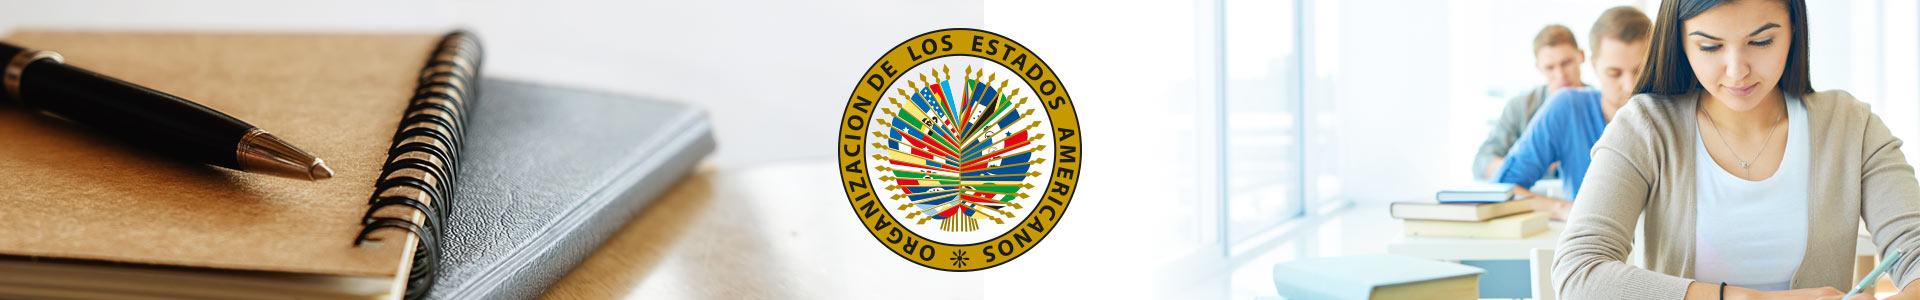 Logo de la OEA con foto de libros y estudiantes en un salón de clase